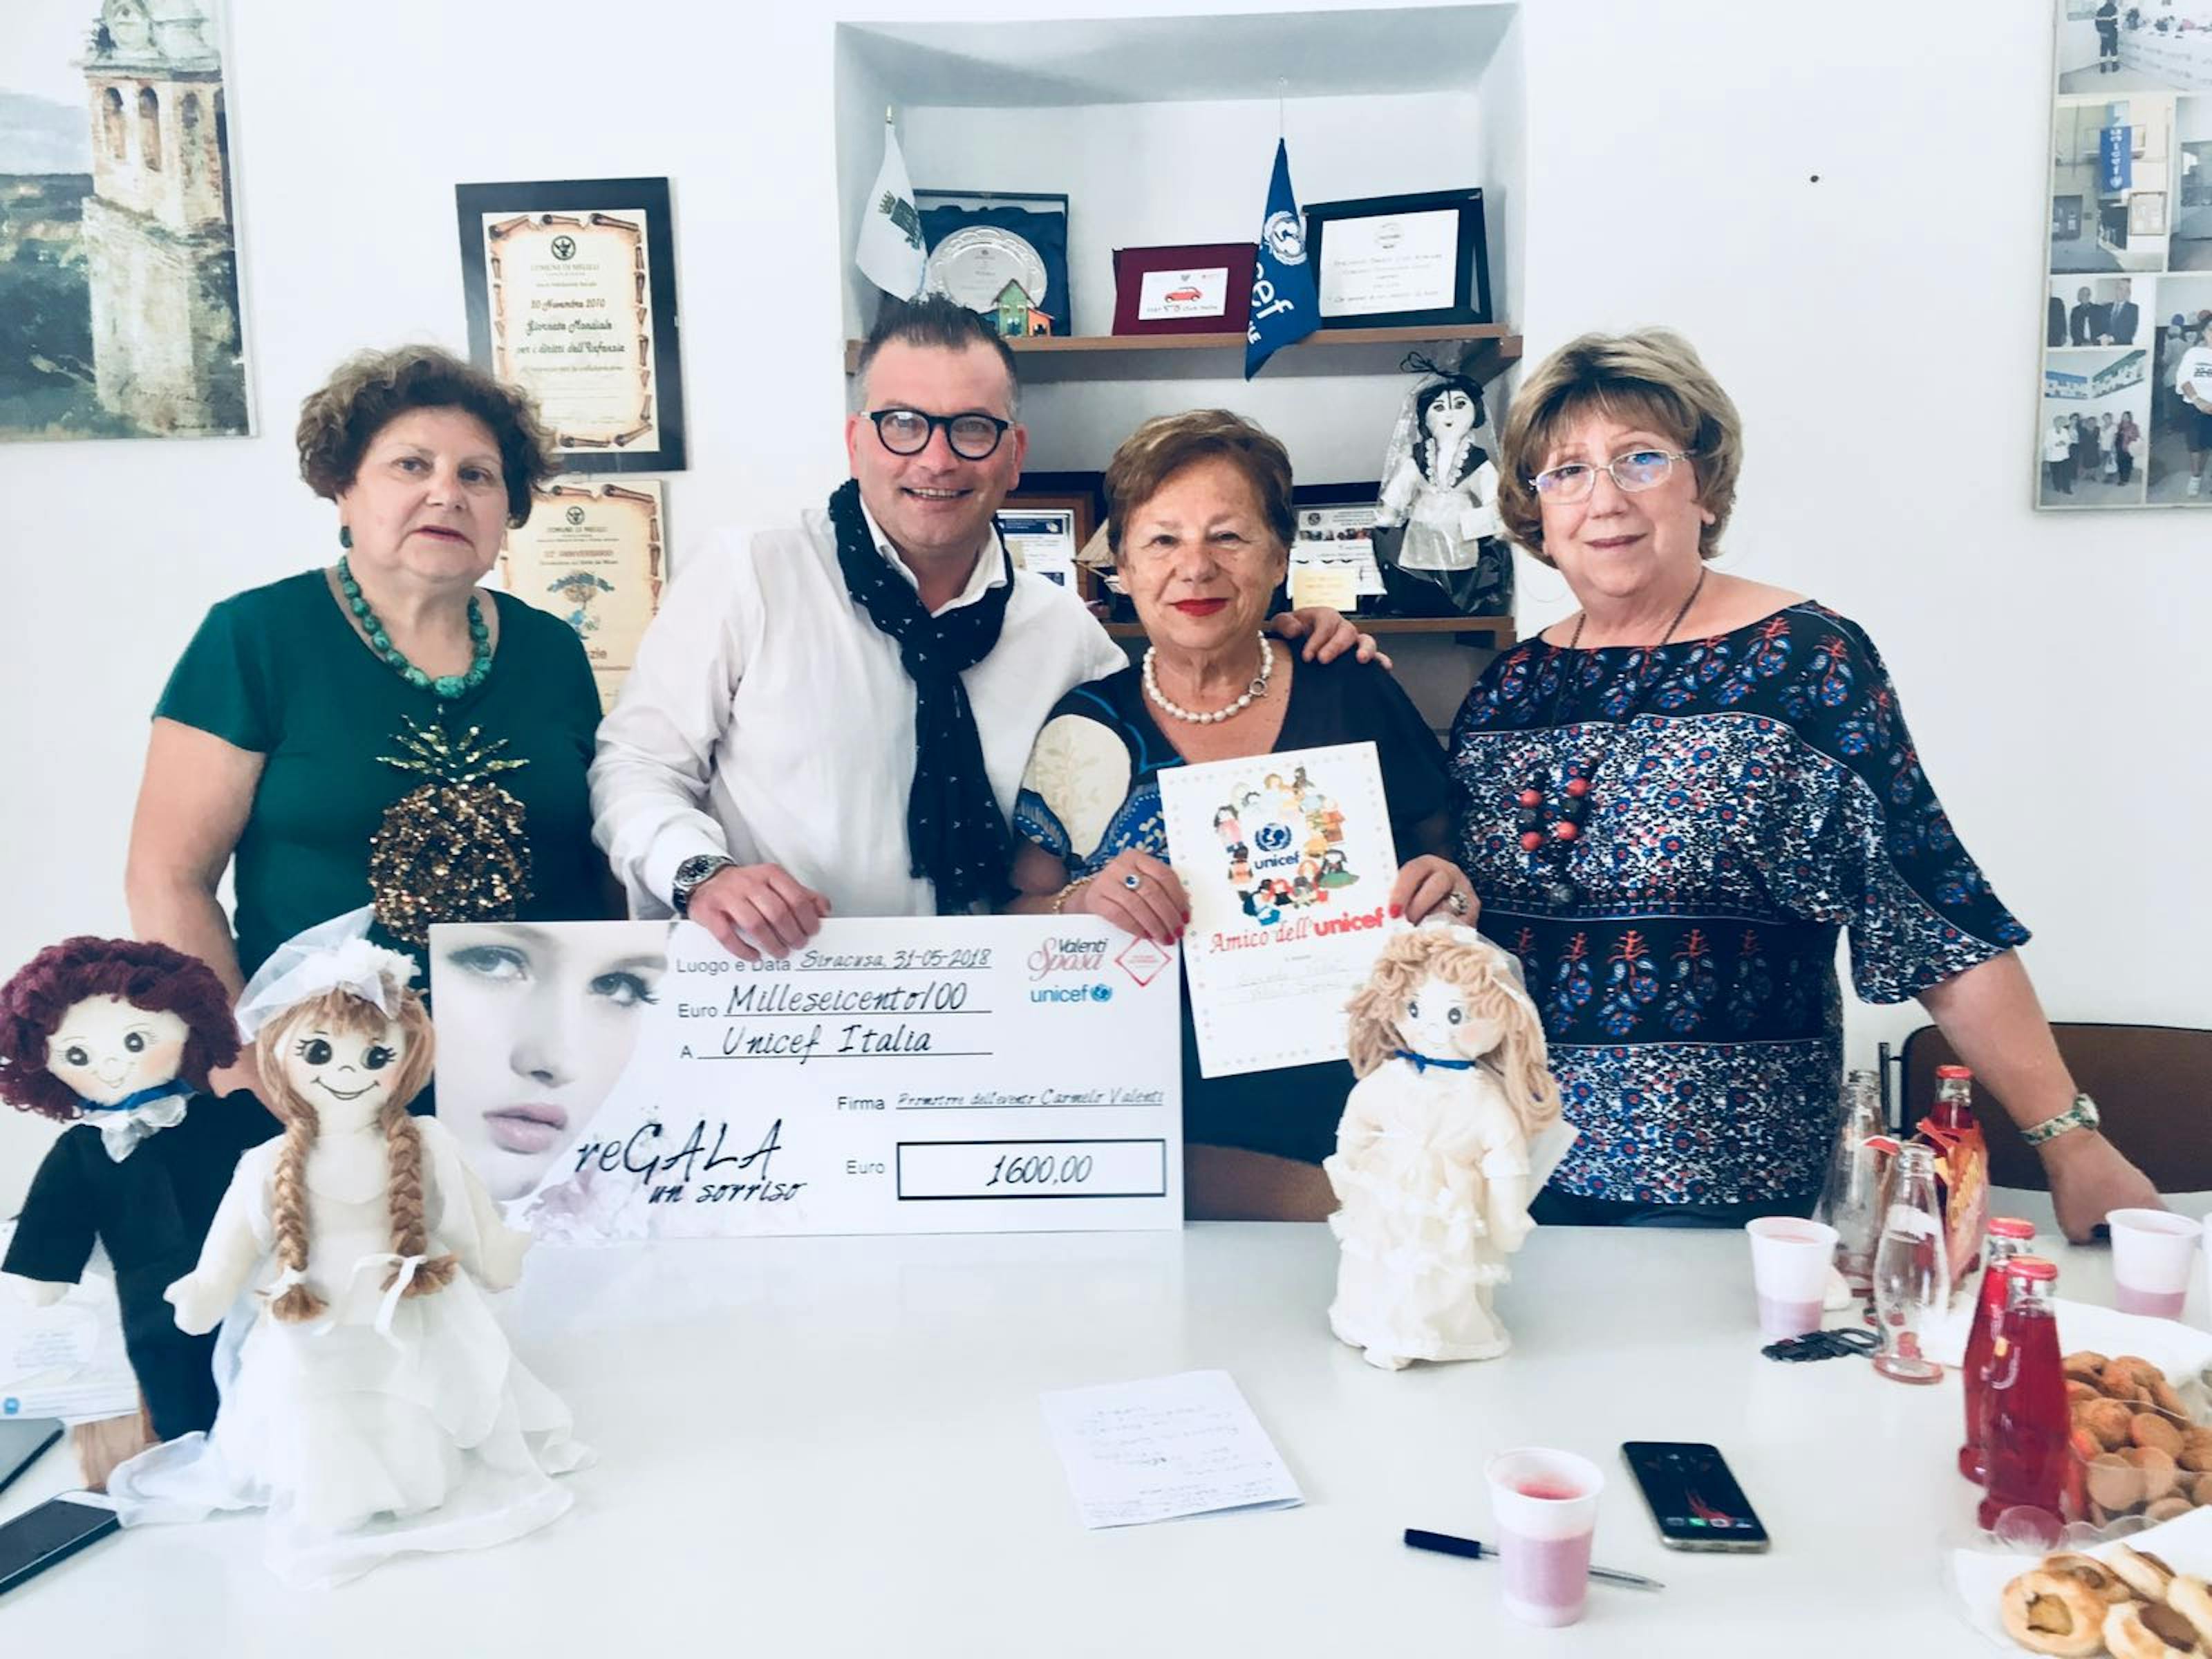 Carmela Pace e Pina Cannizzo ricevono 1.600 euro raccolti per l'UNICEF